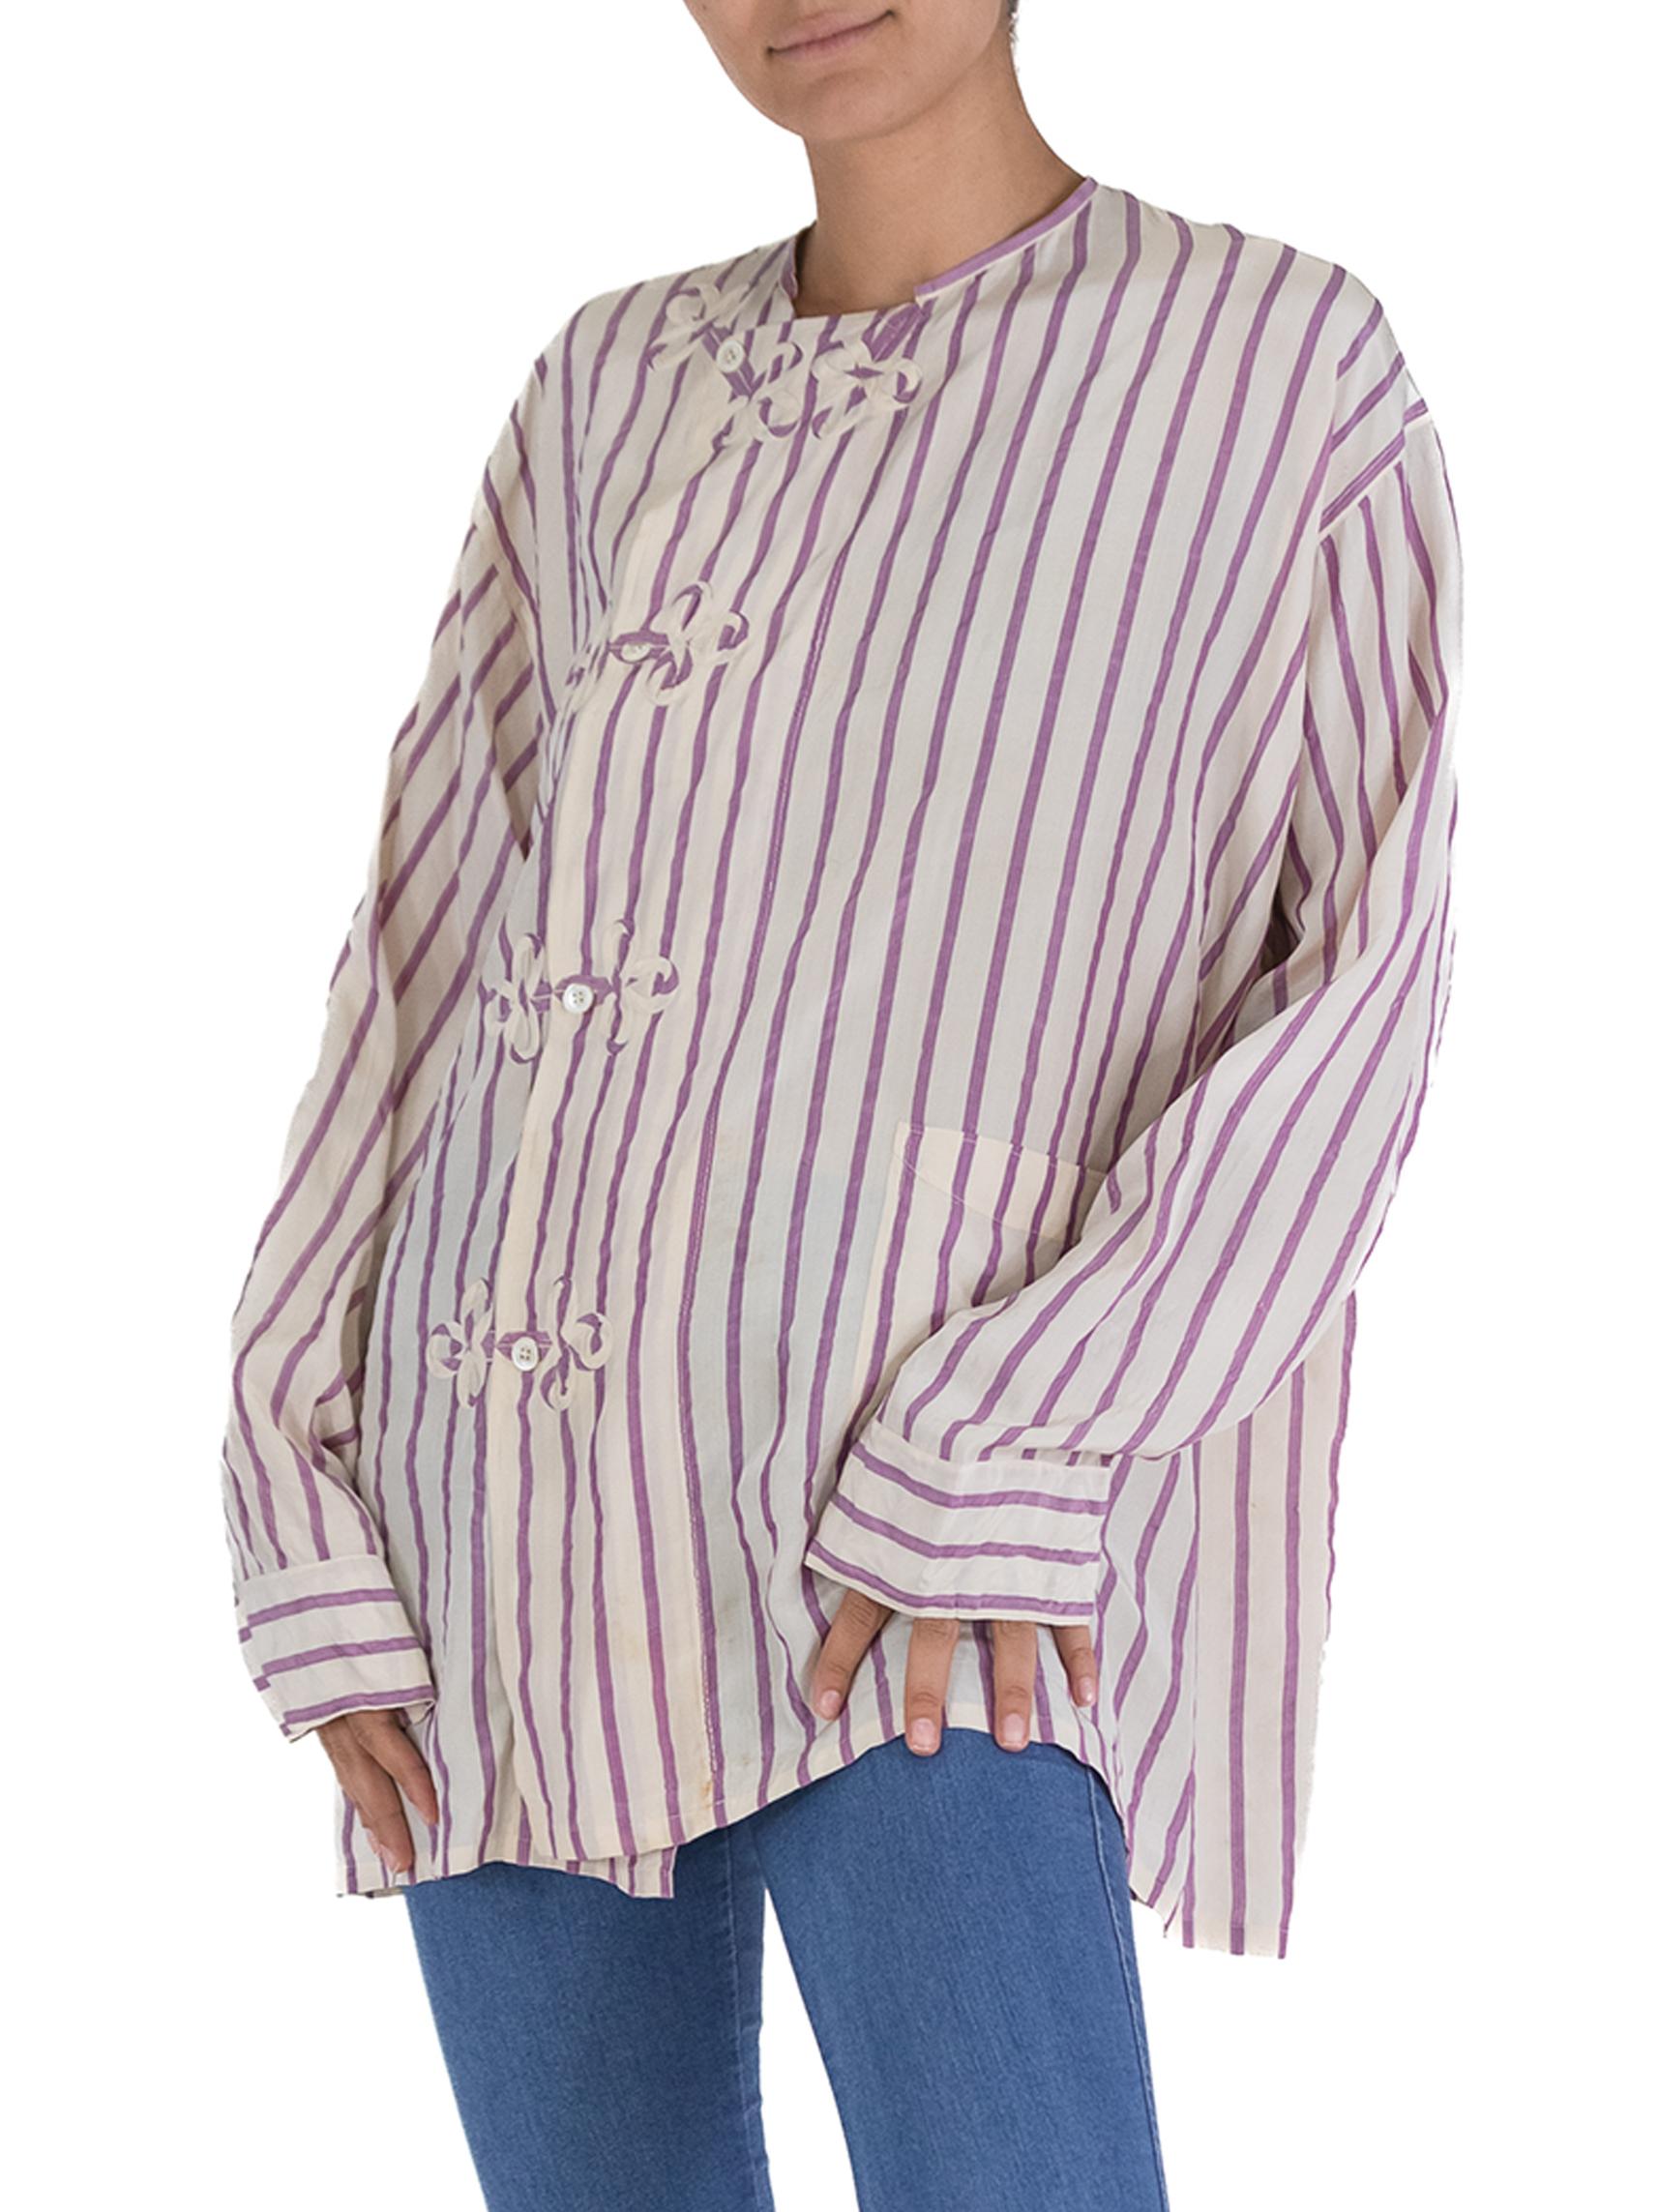 Men's Victorian White & Lavender Silk Striped Antique Pajama Top For Sale